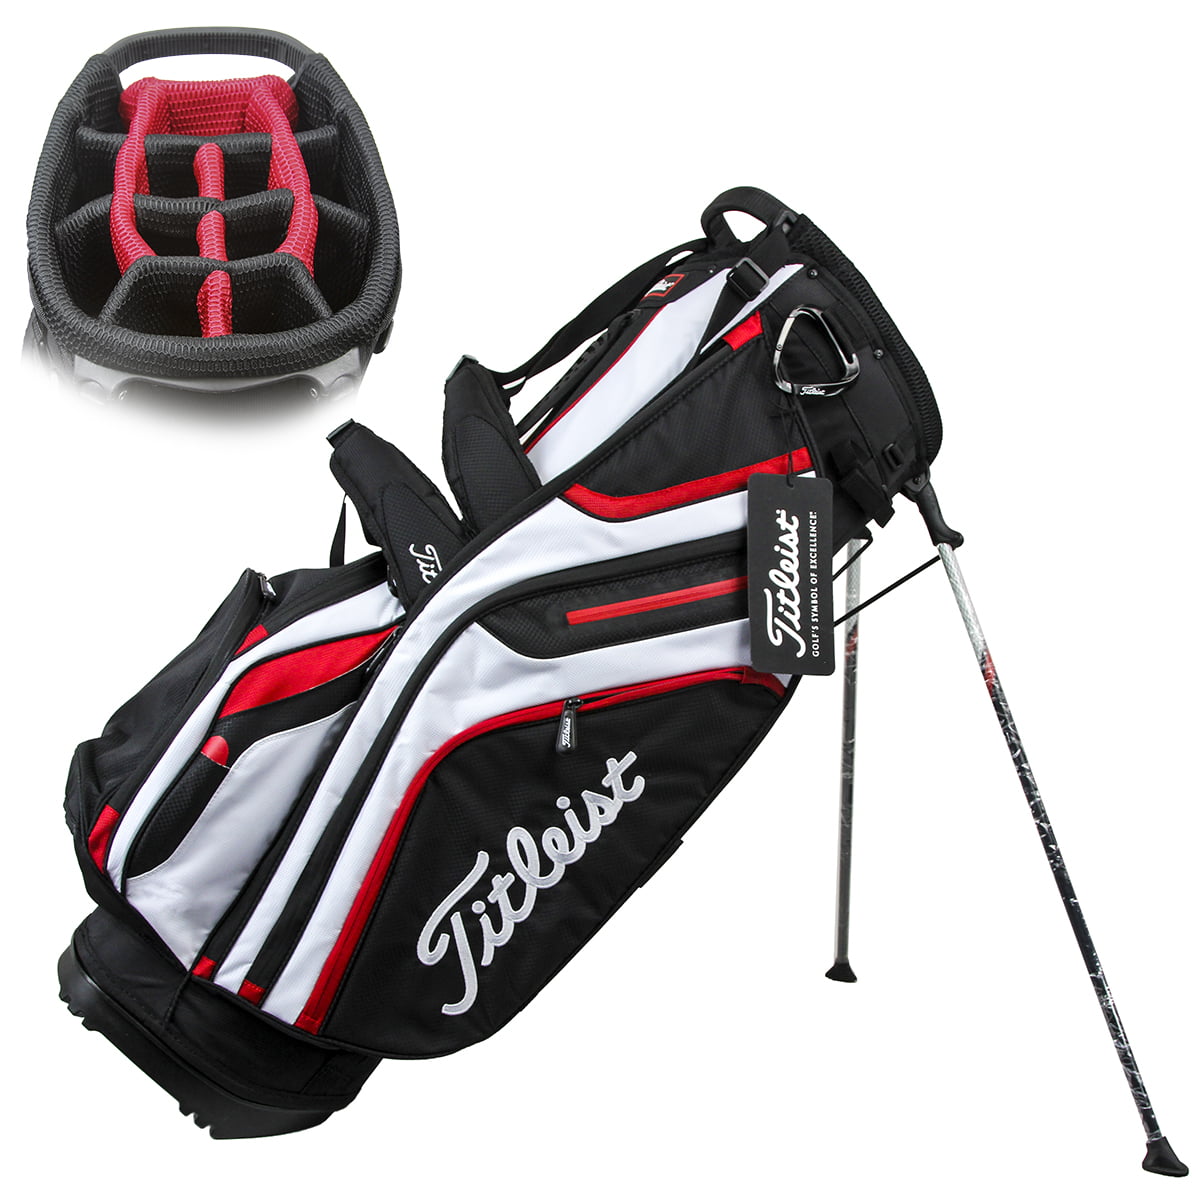 Titleist Golf Bag Reviews